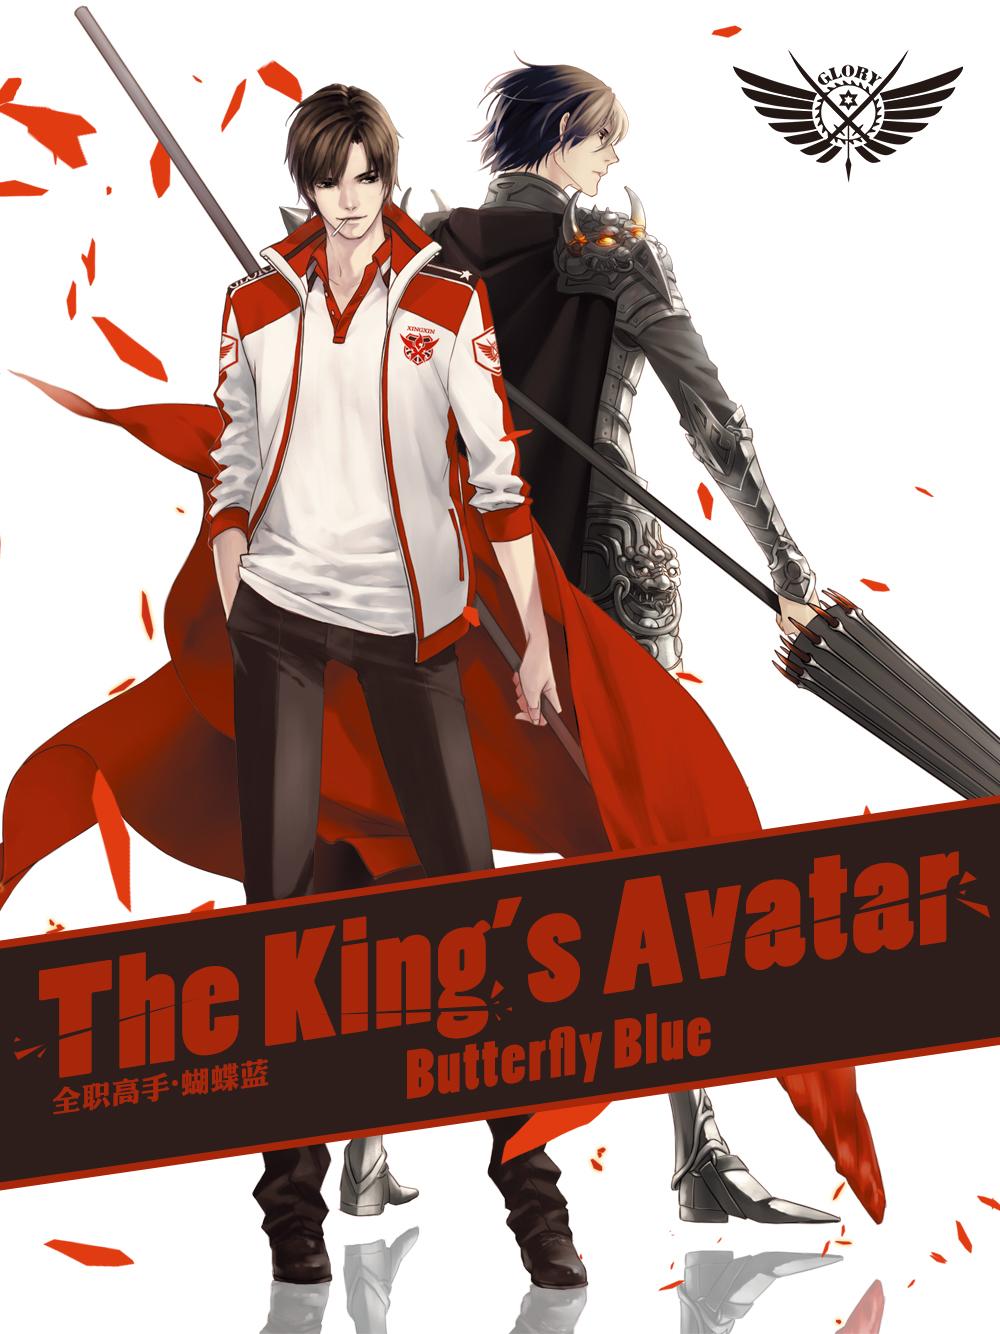 62 King Avatar ideas  king's avatar, avatar, anime boy